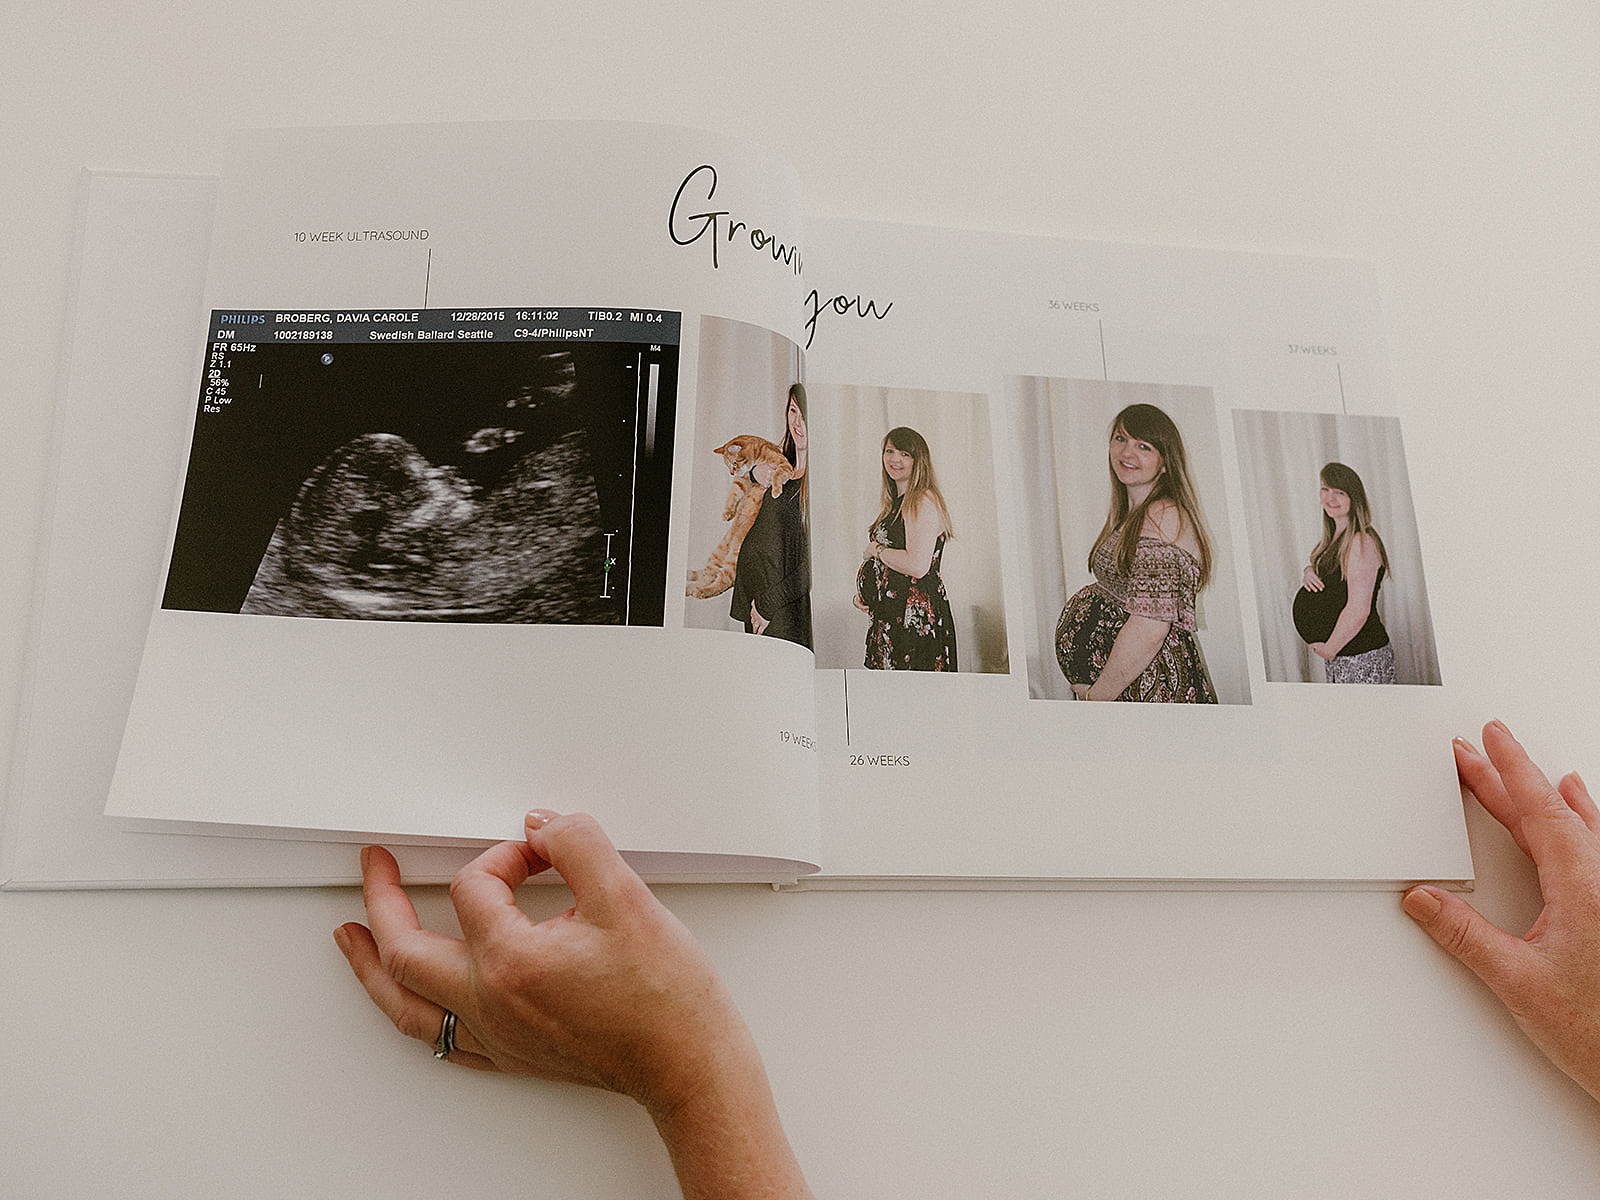 A woman flips through pregnancy photos in a baby book.